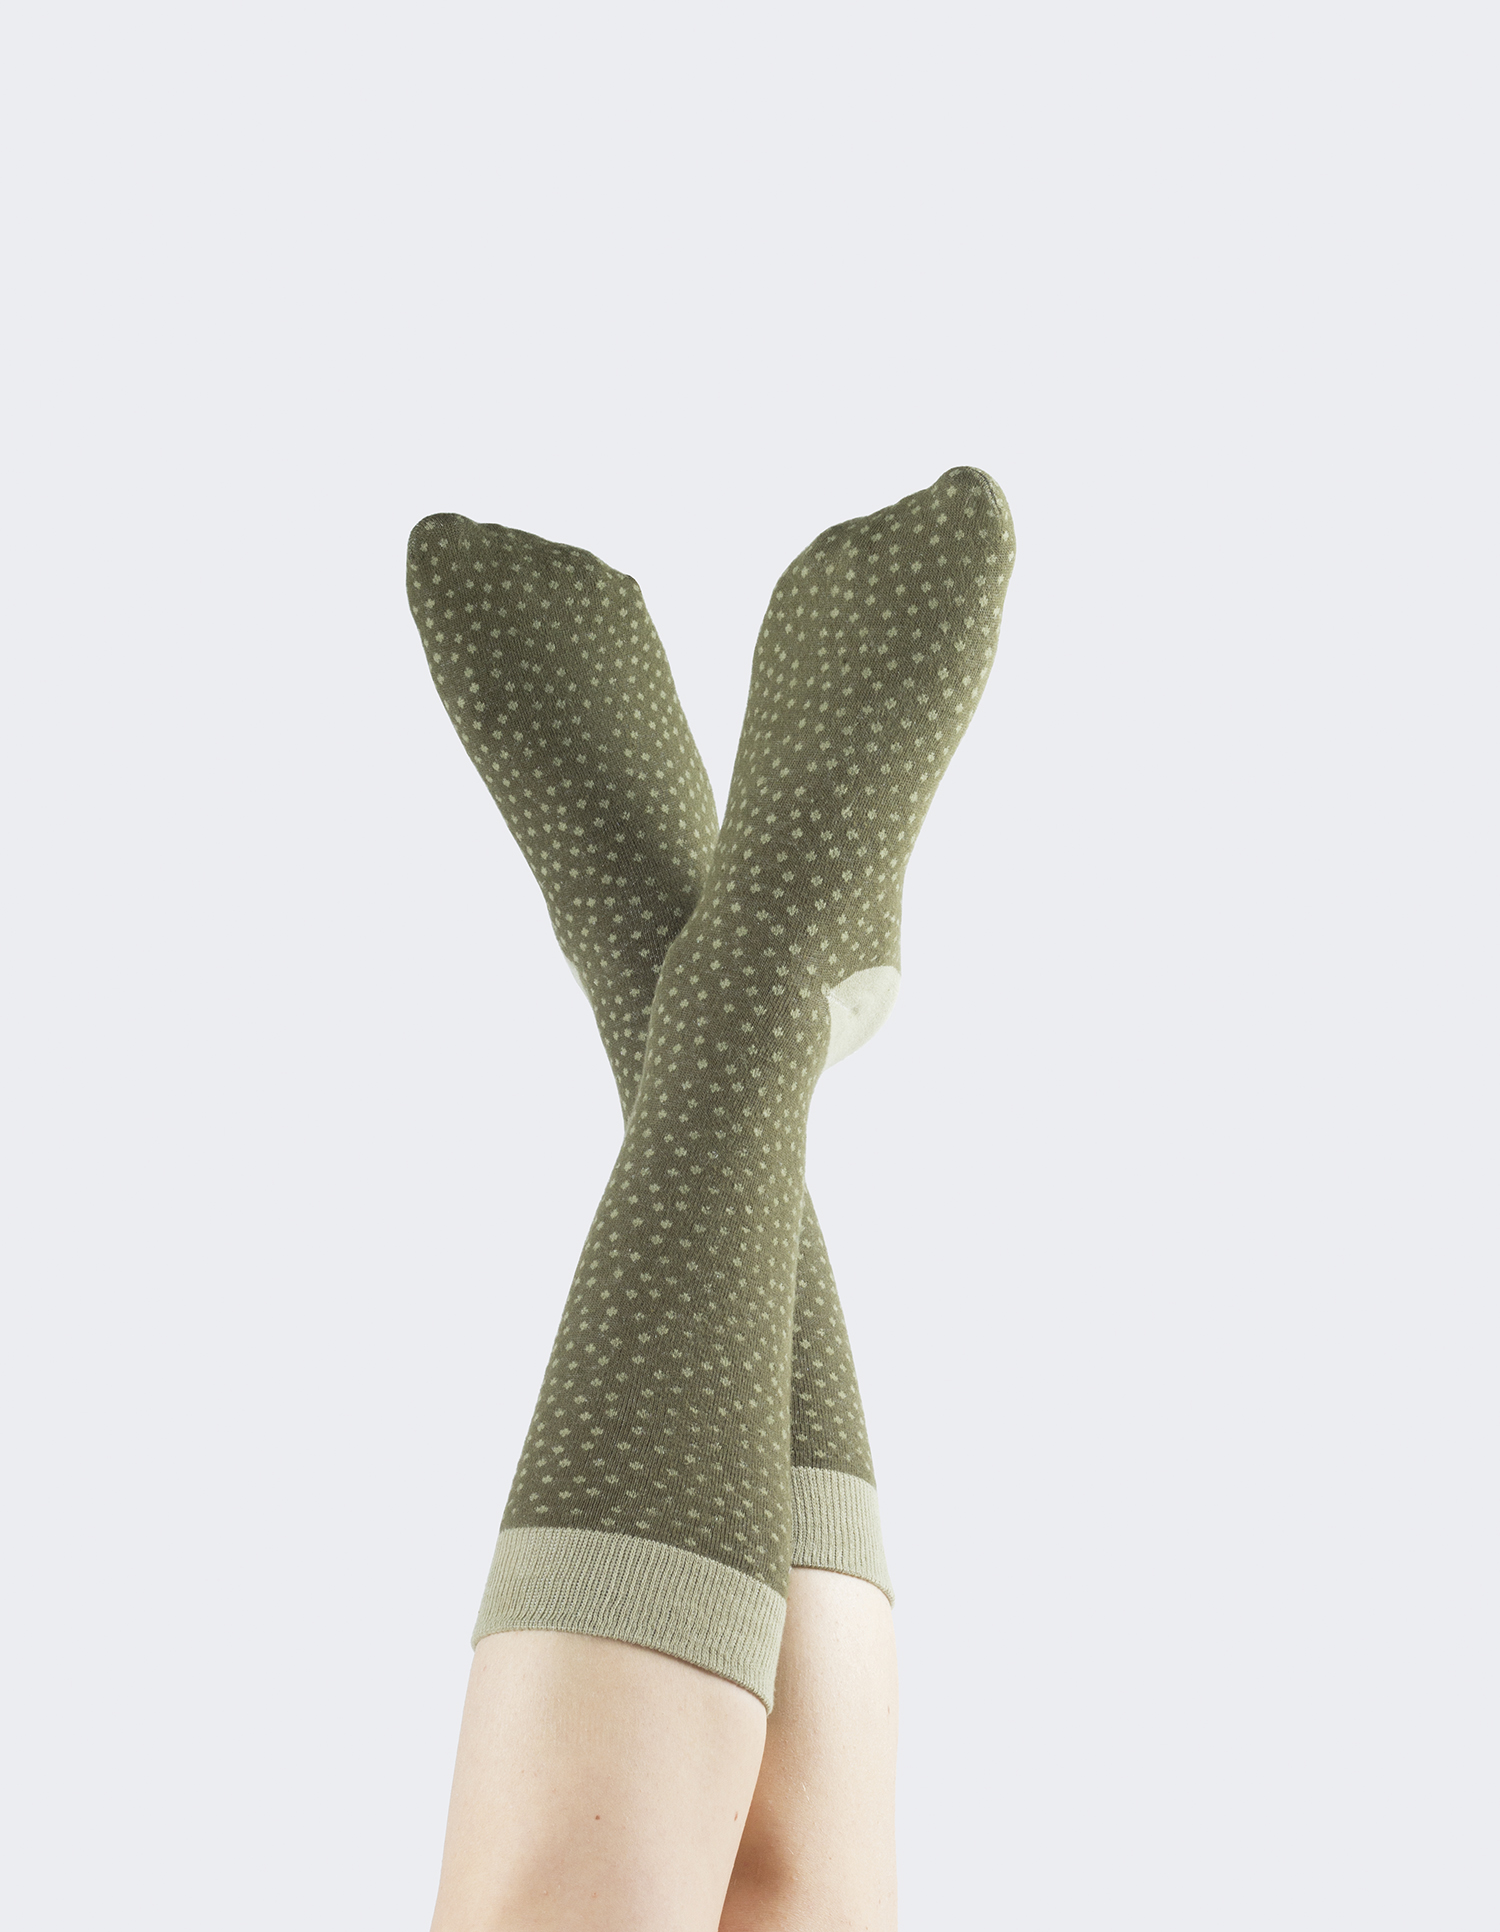 Cactus socks mammillaria